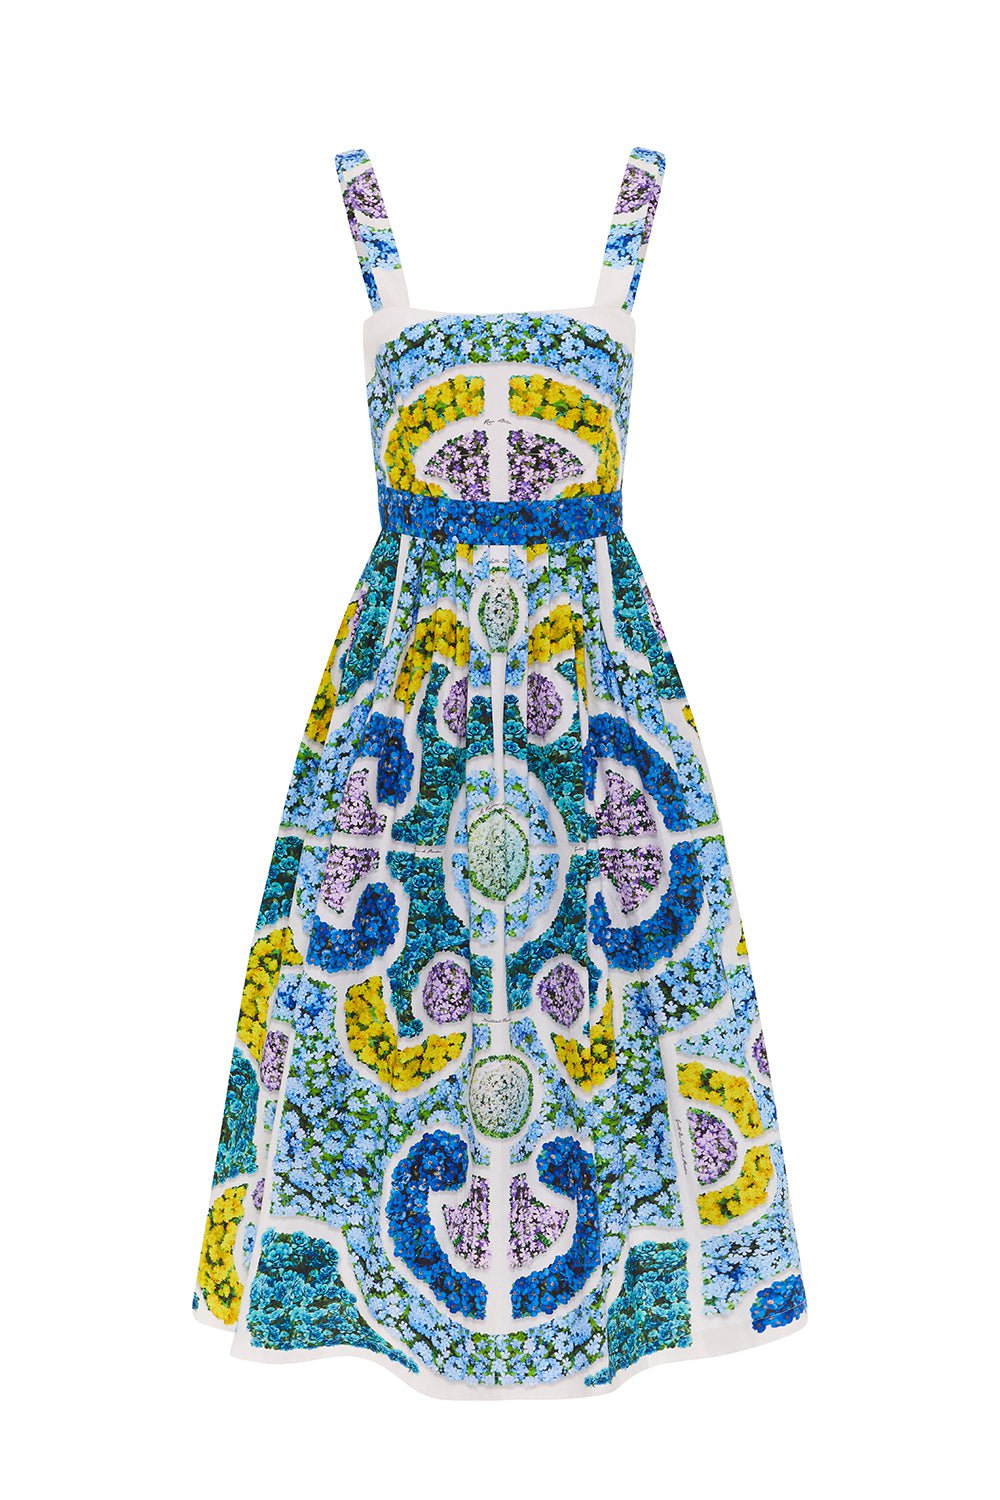 MARY KATRANTZOU-Iris Dress - Blue Topiary-